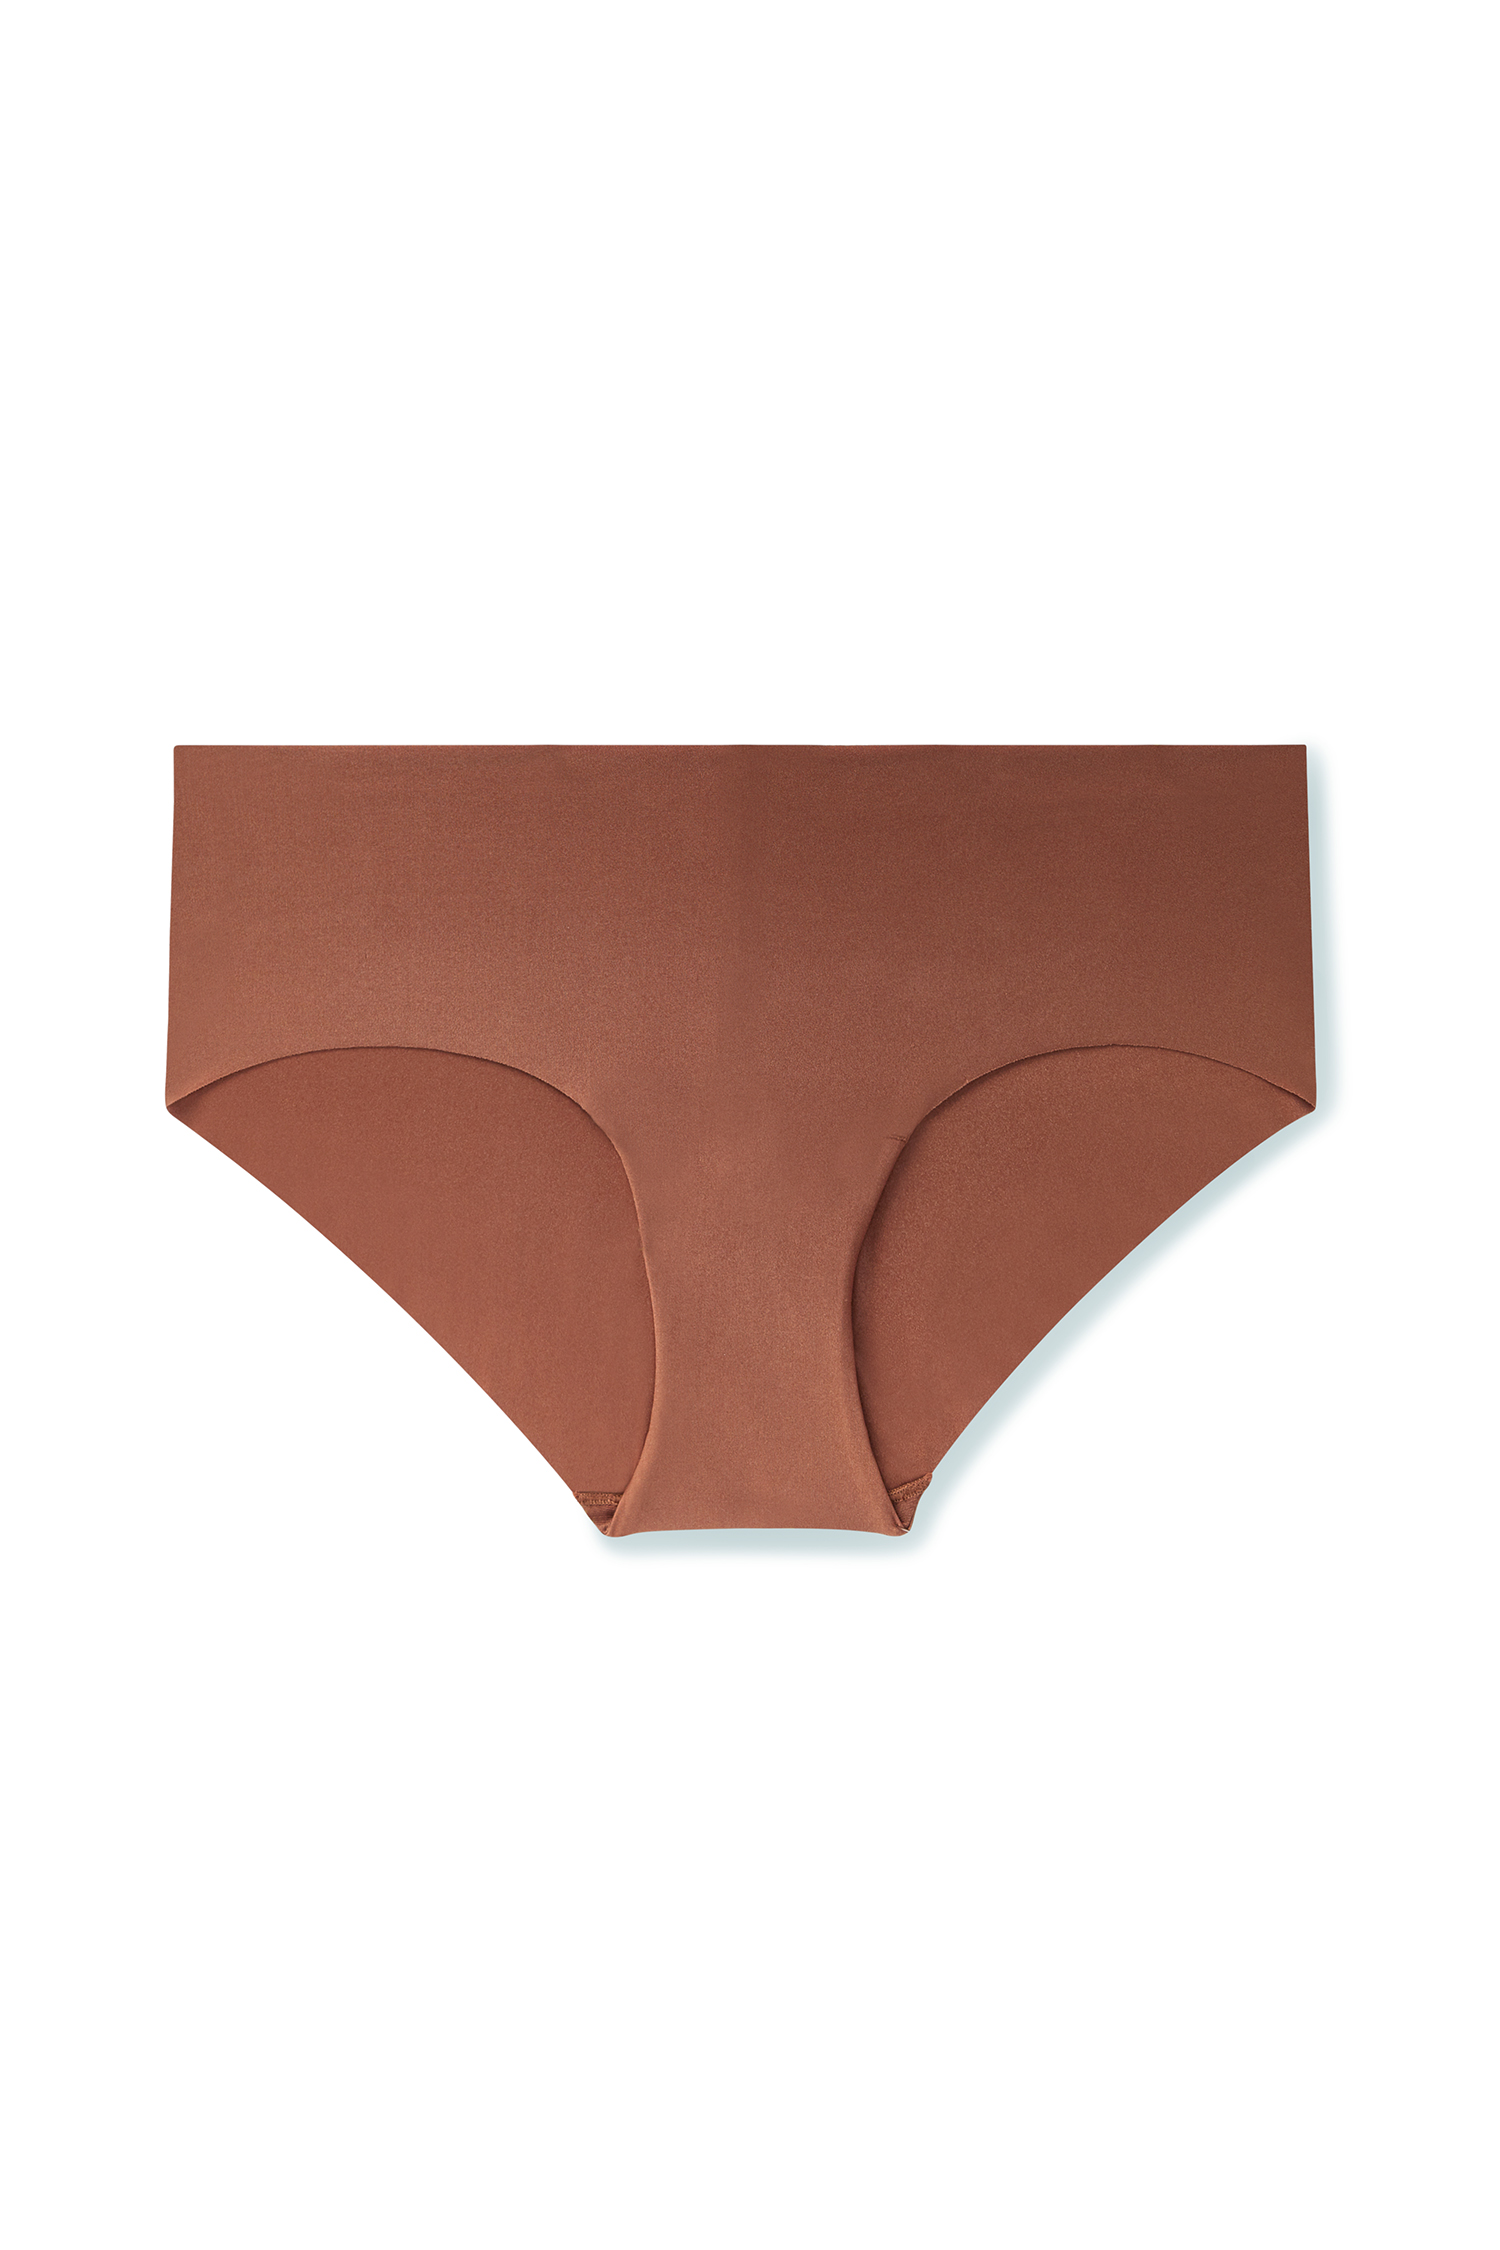 brown underwear